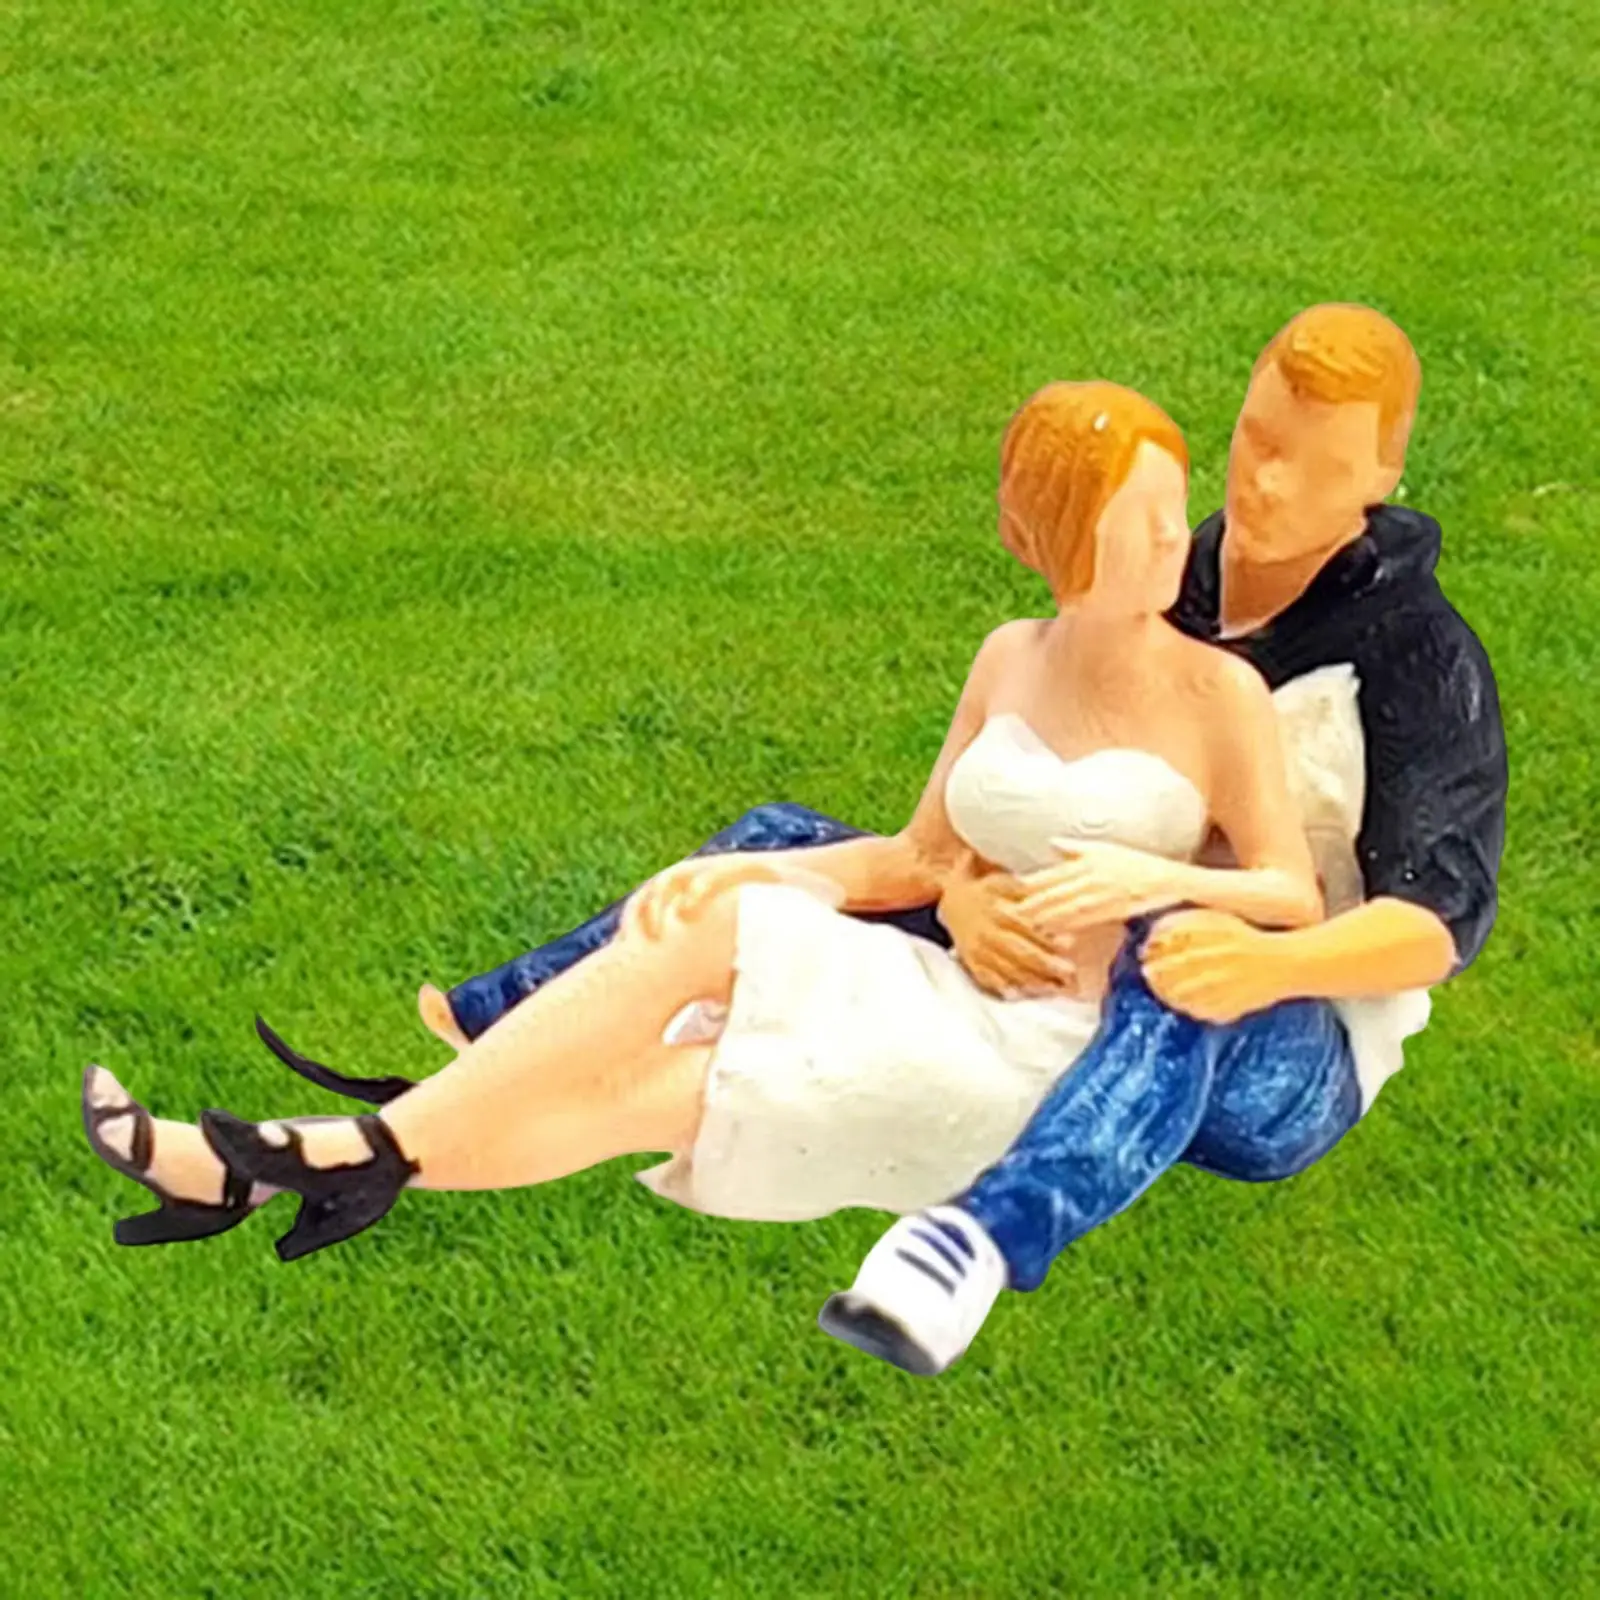 1/64 Couple Figures Miniature Scenes Scene Layout Micro Landscape Decoration